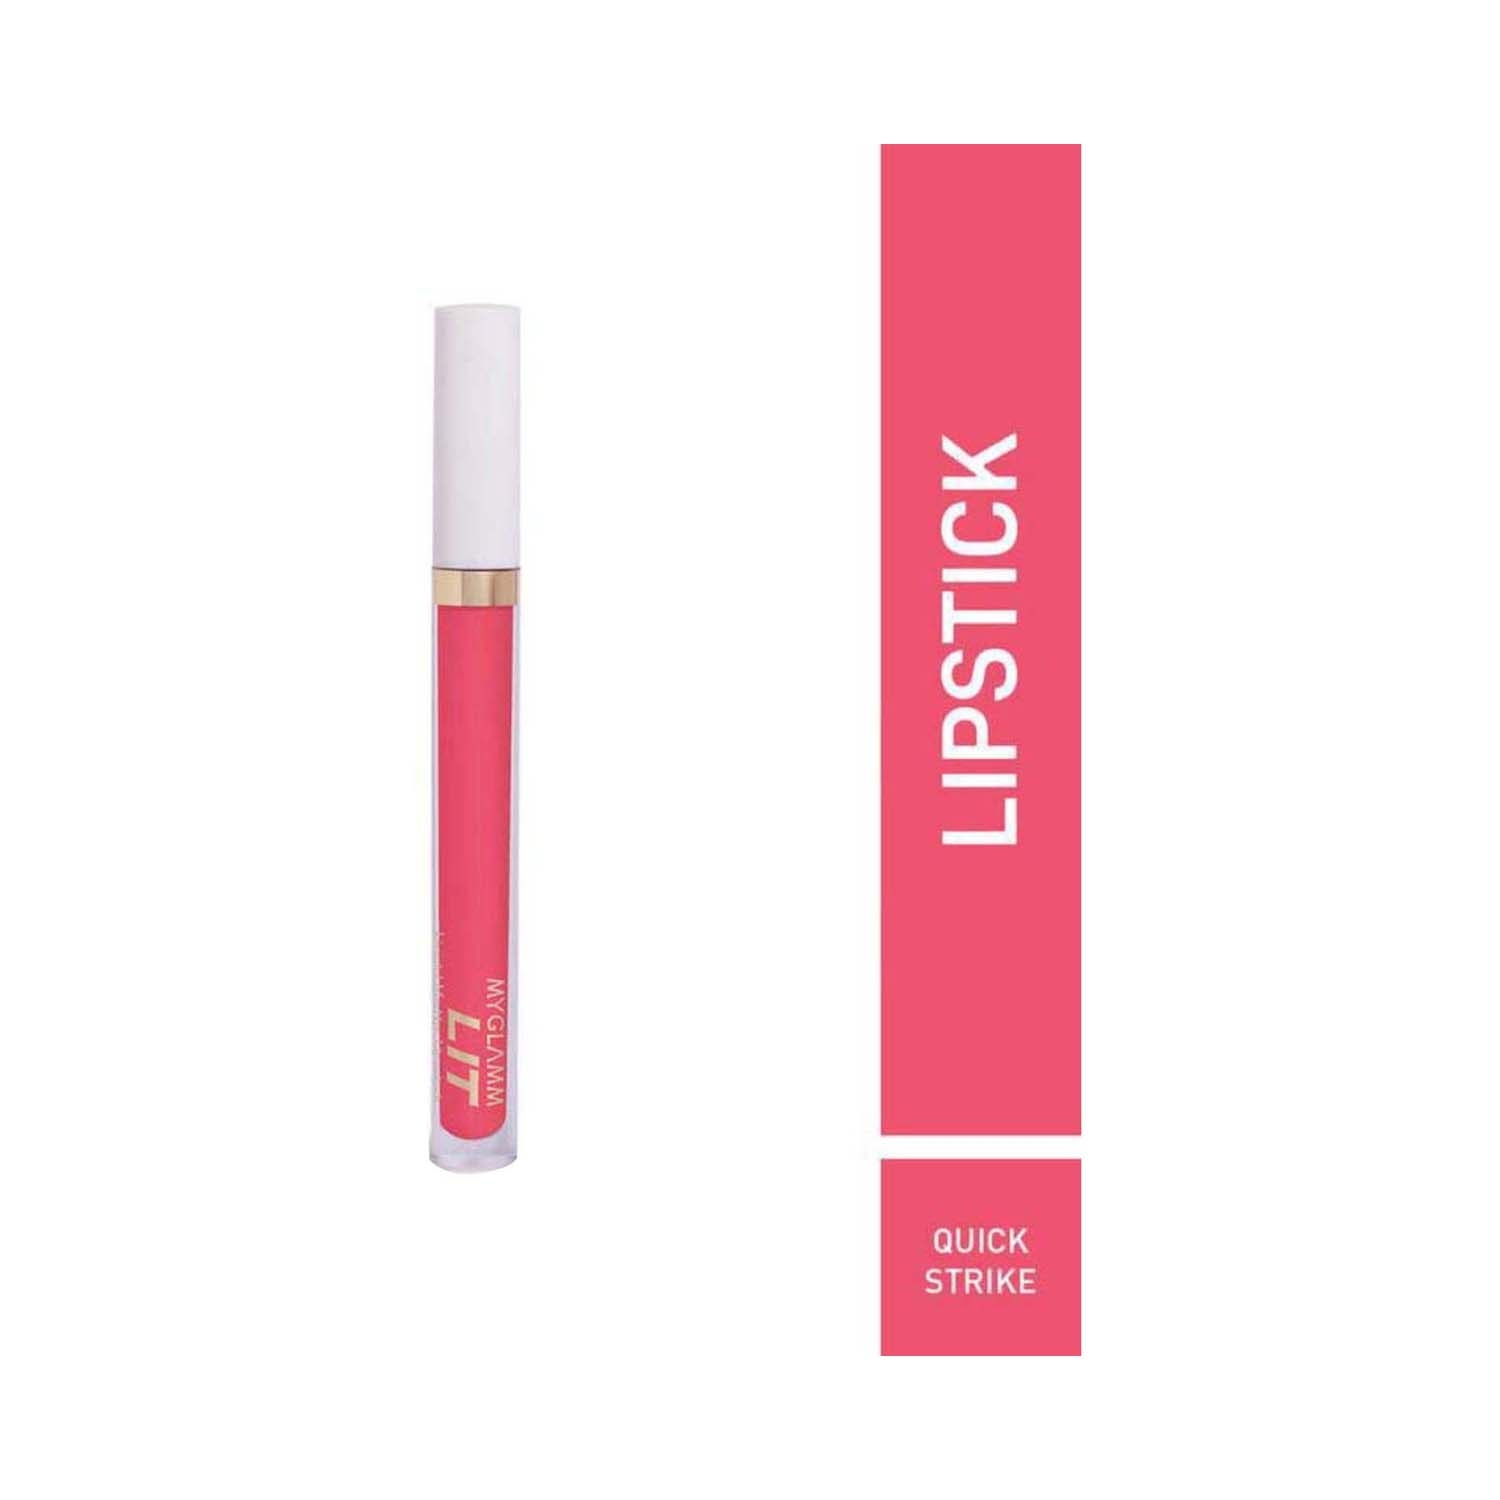 MyGlamm | MyGlamm LIT Liquid Matte Lipstick - Quick Strike (3ml)